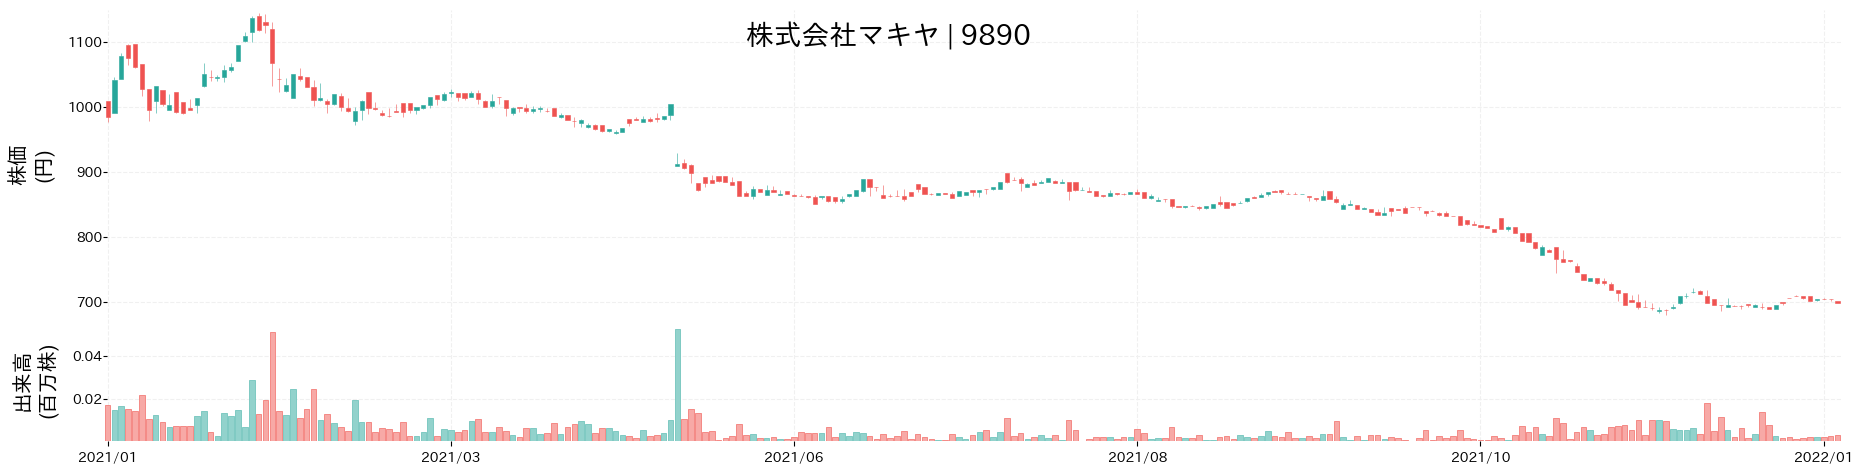 マキヤの株価推移(2021)